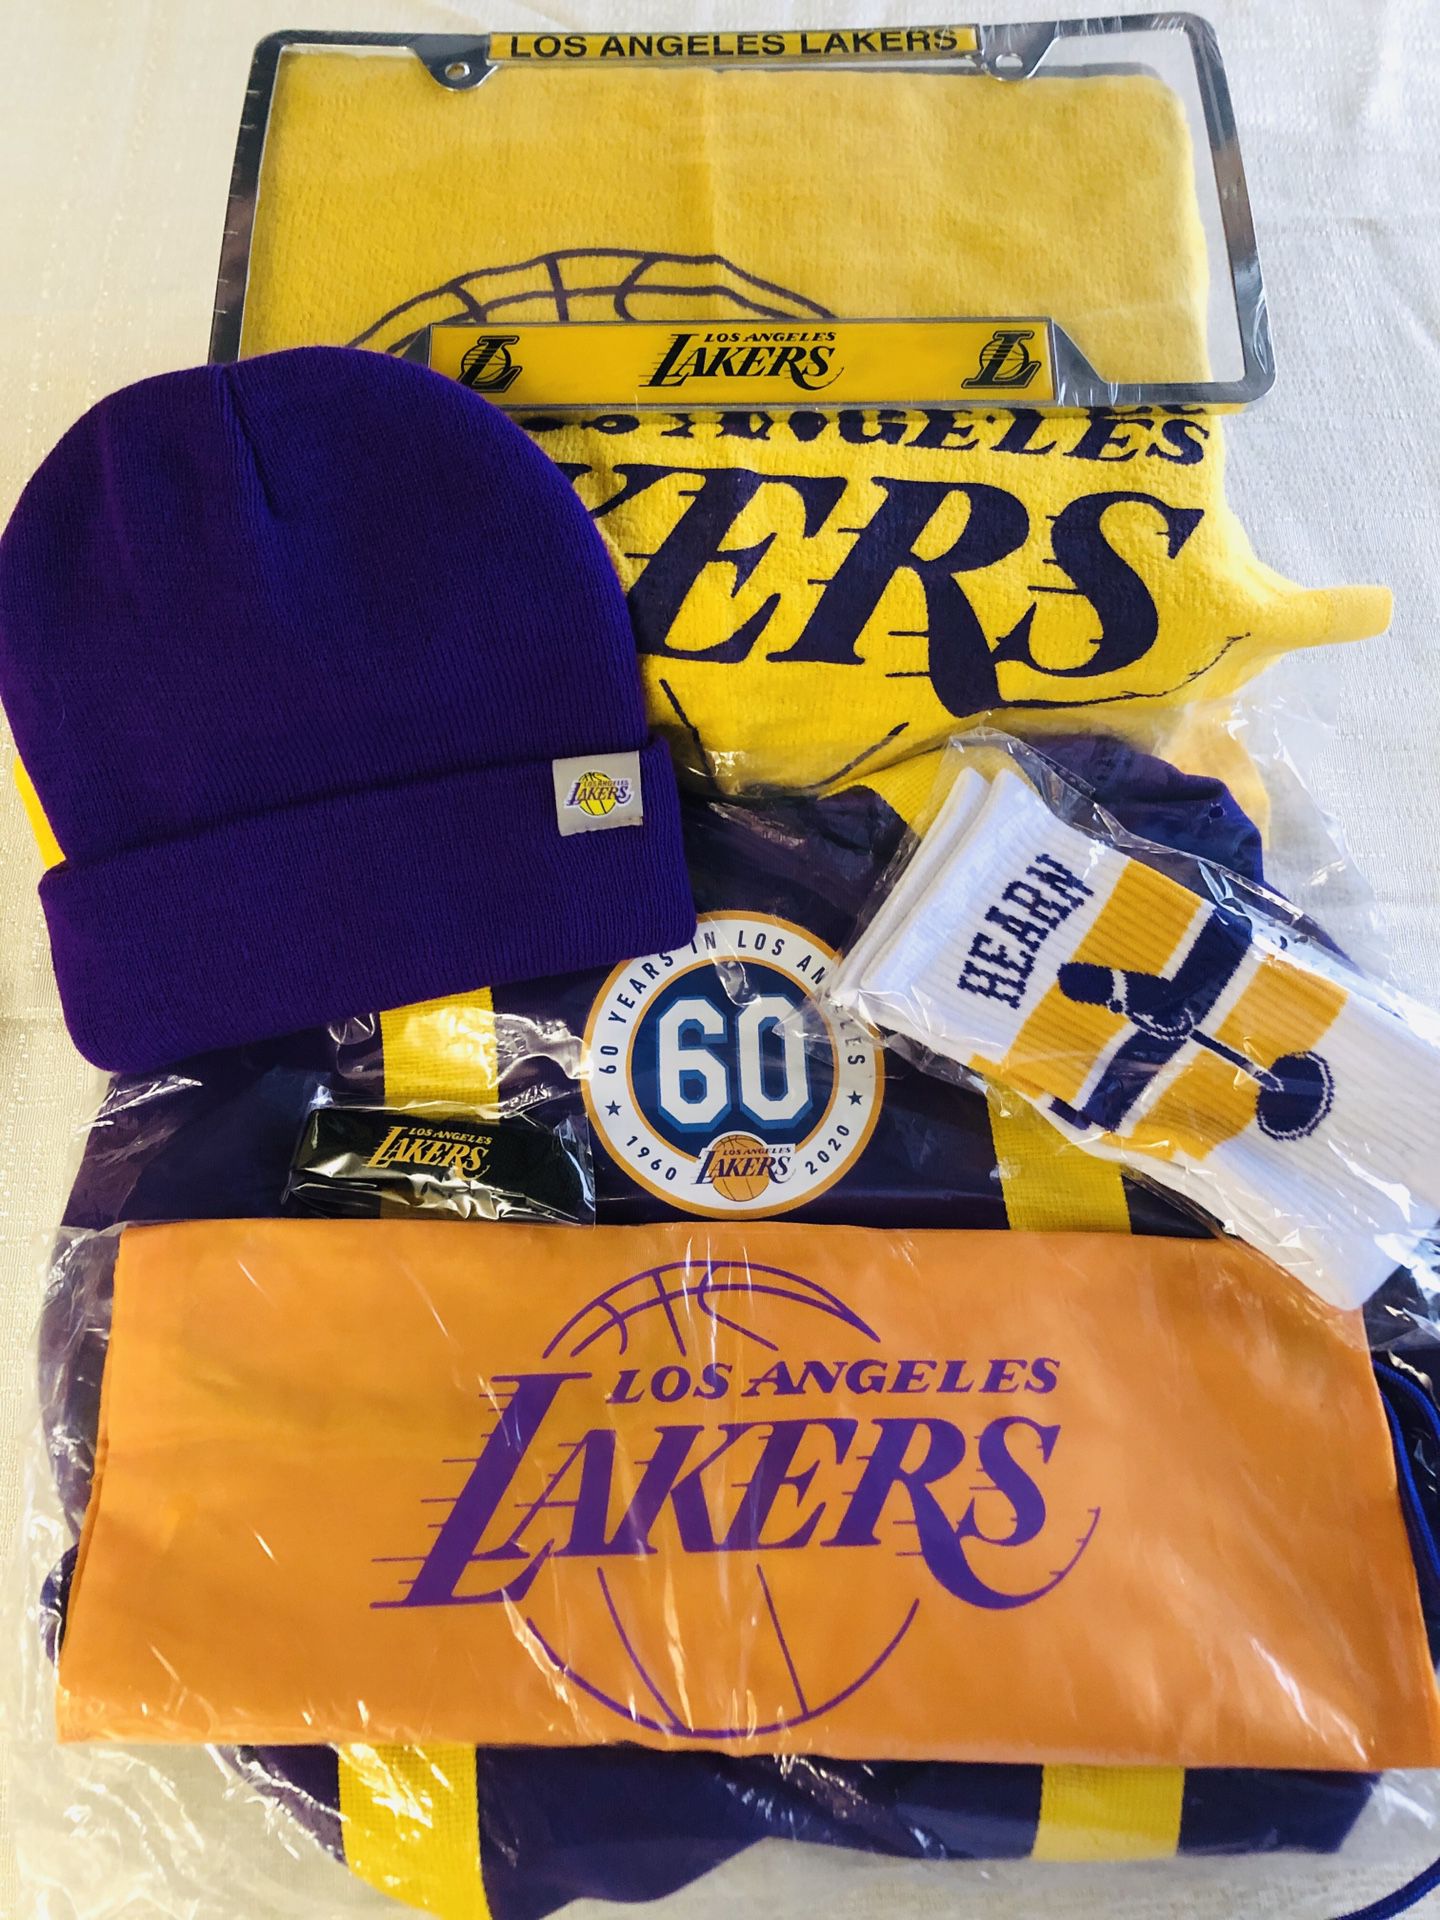 LA Lakers Duffle Bag Combo!